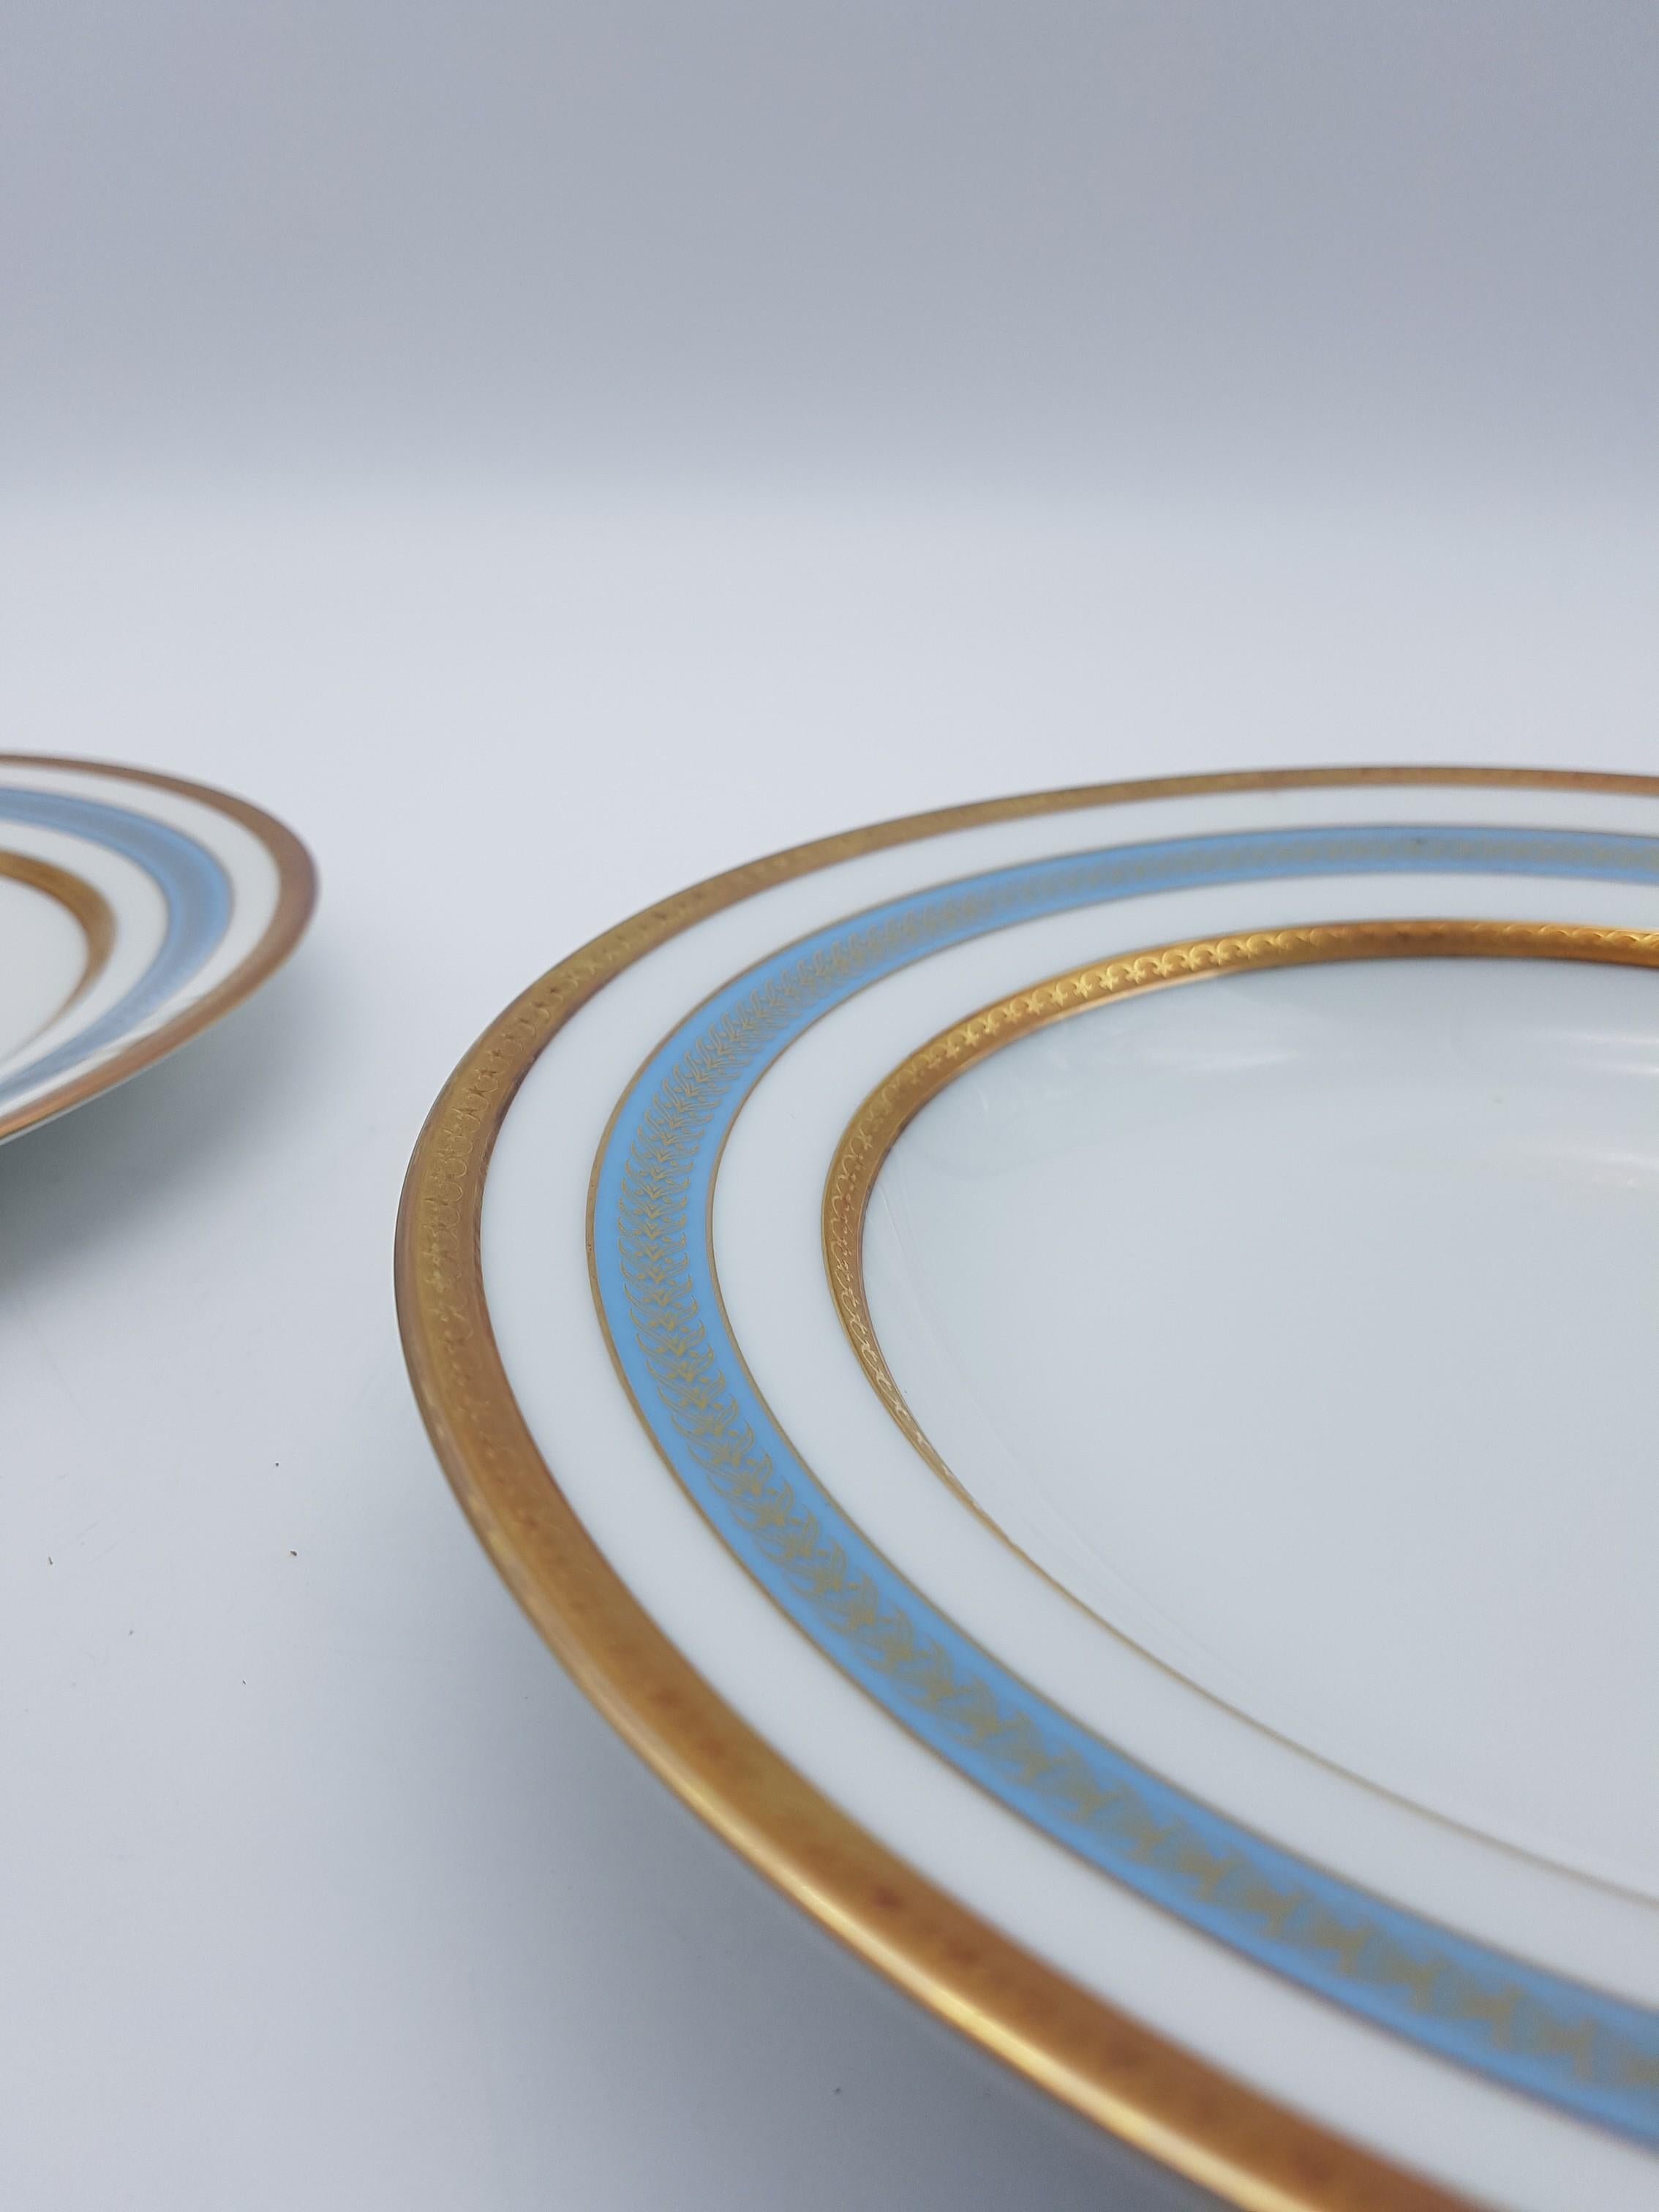 Heinrich Bavaria Porcelain Dinner Service, 18-Piece Gold Rimmed Bone China Set For Sale 4